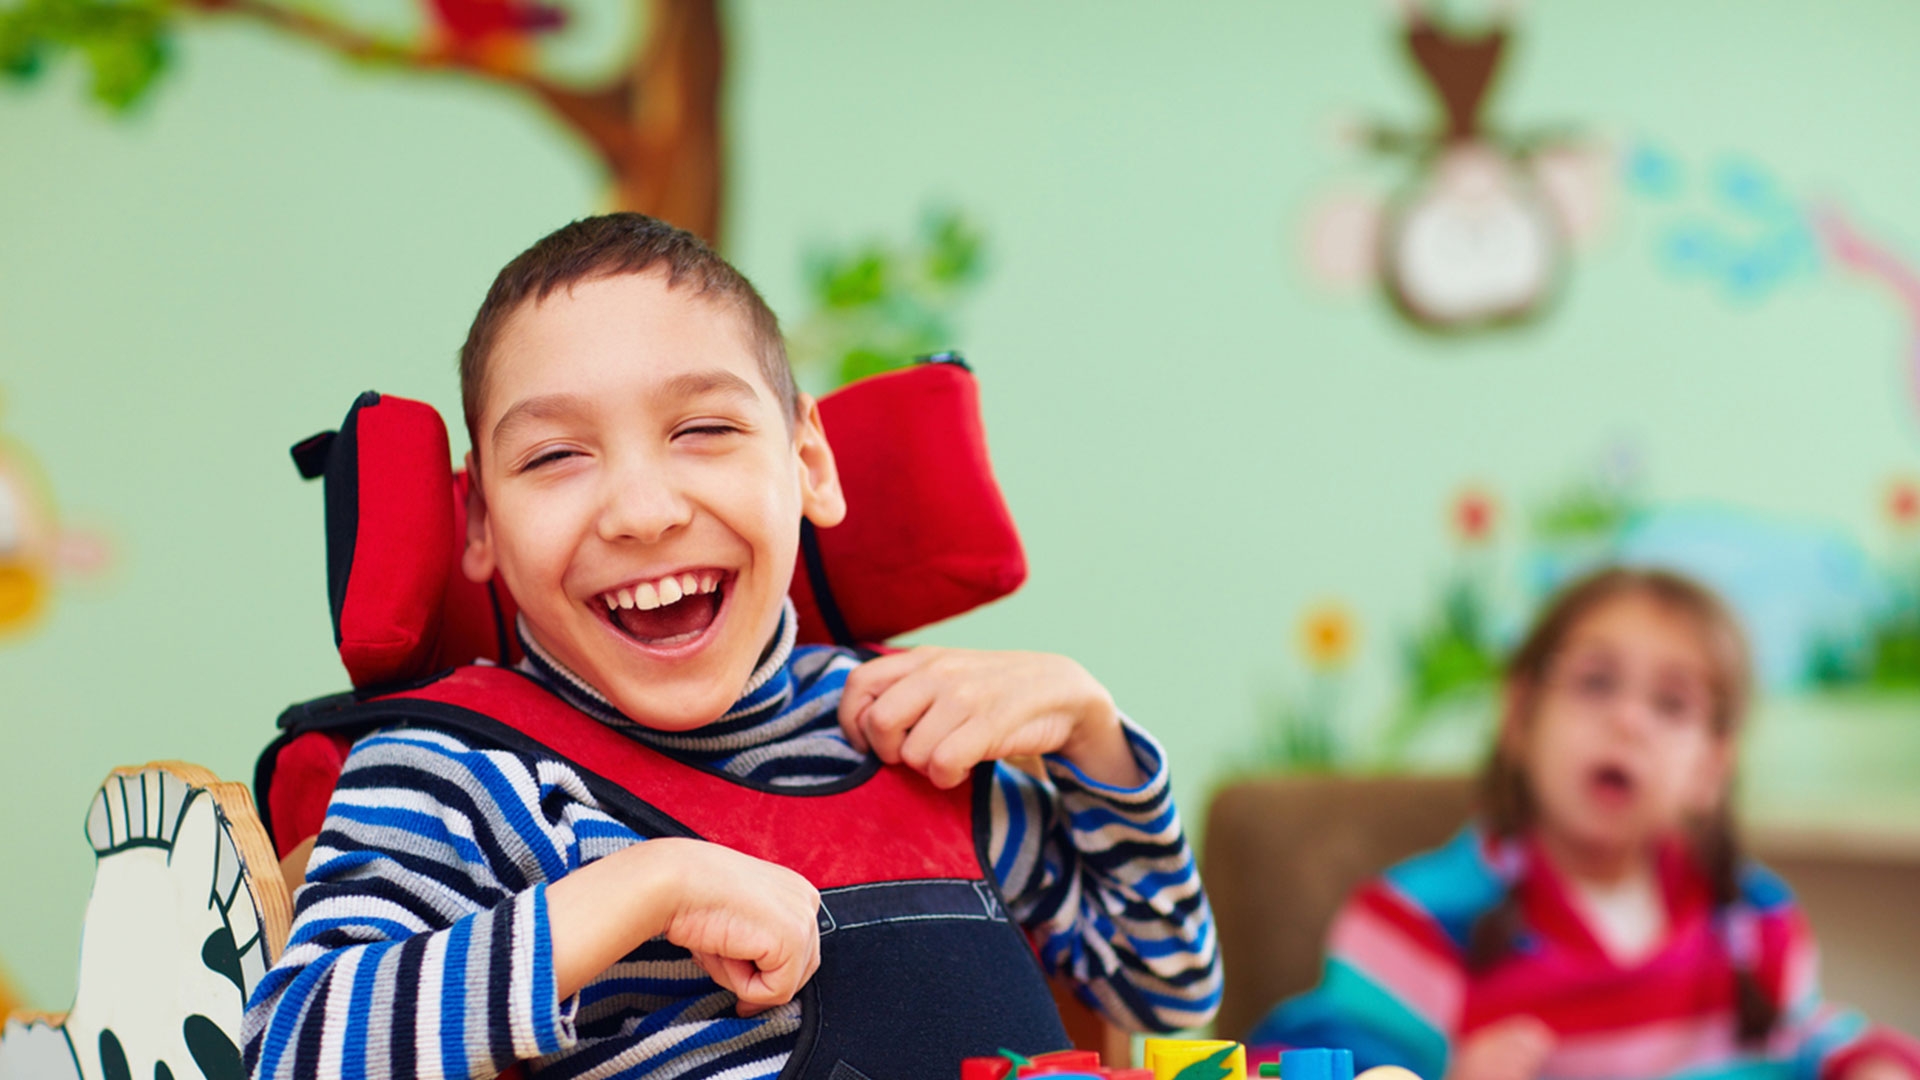 Menino com deficiência sentado em cadeira de rodas sorri largamente em uma sala de brincar colorida